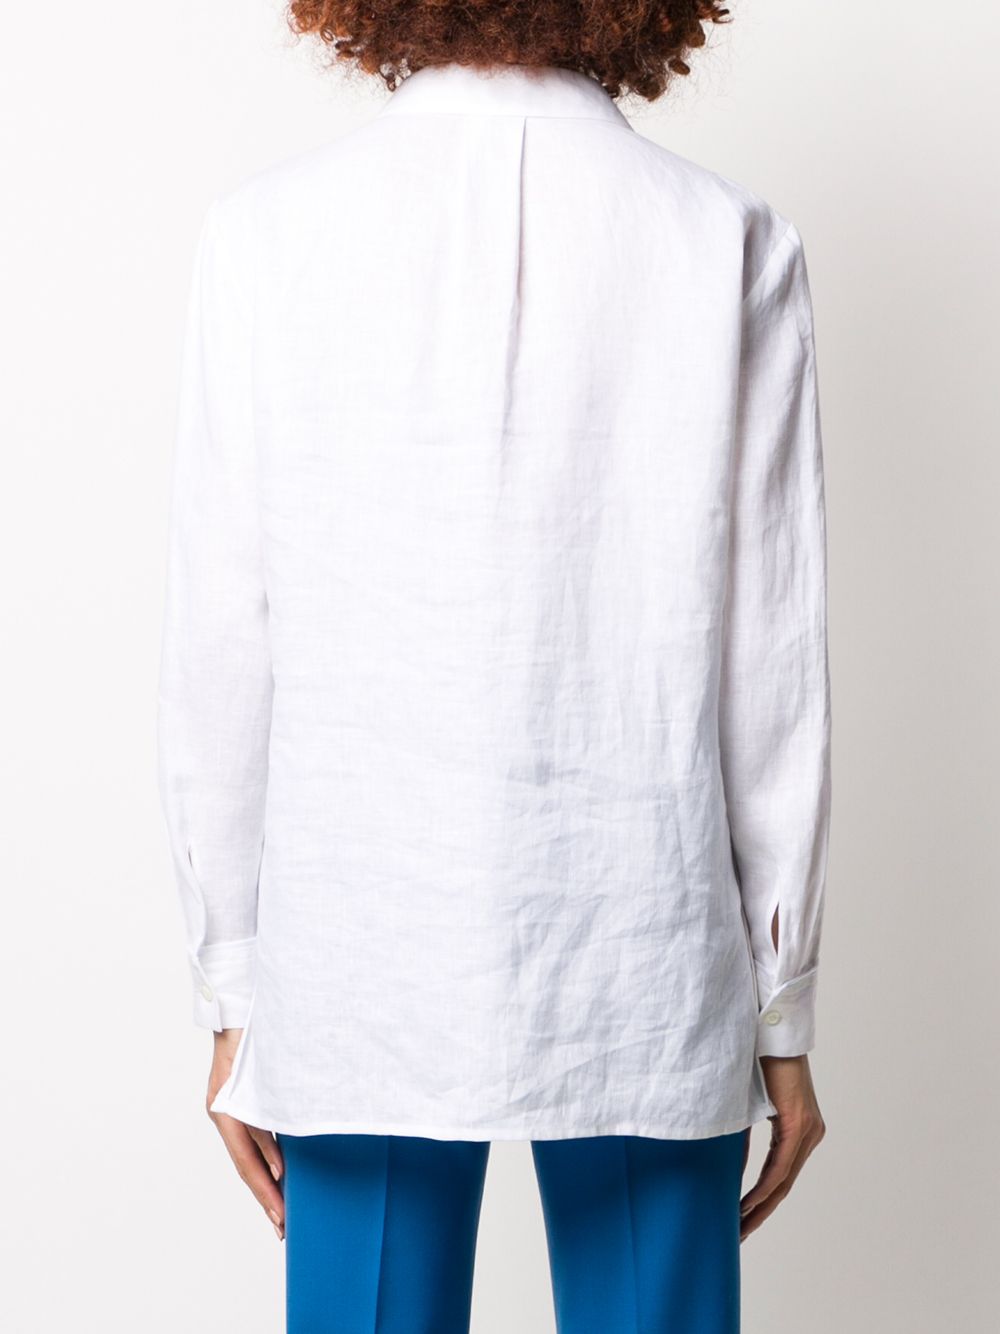 фото Escada sport блузка с v-образным вырезом